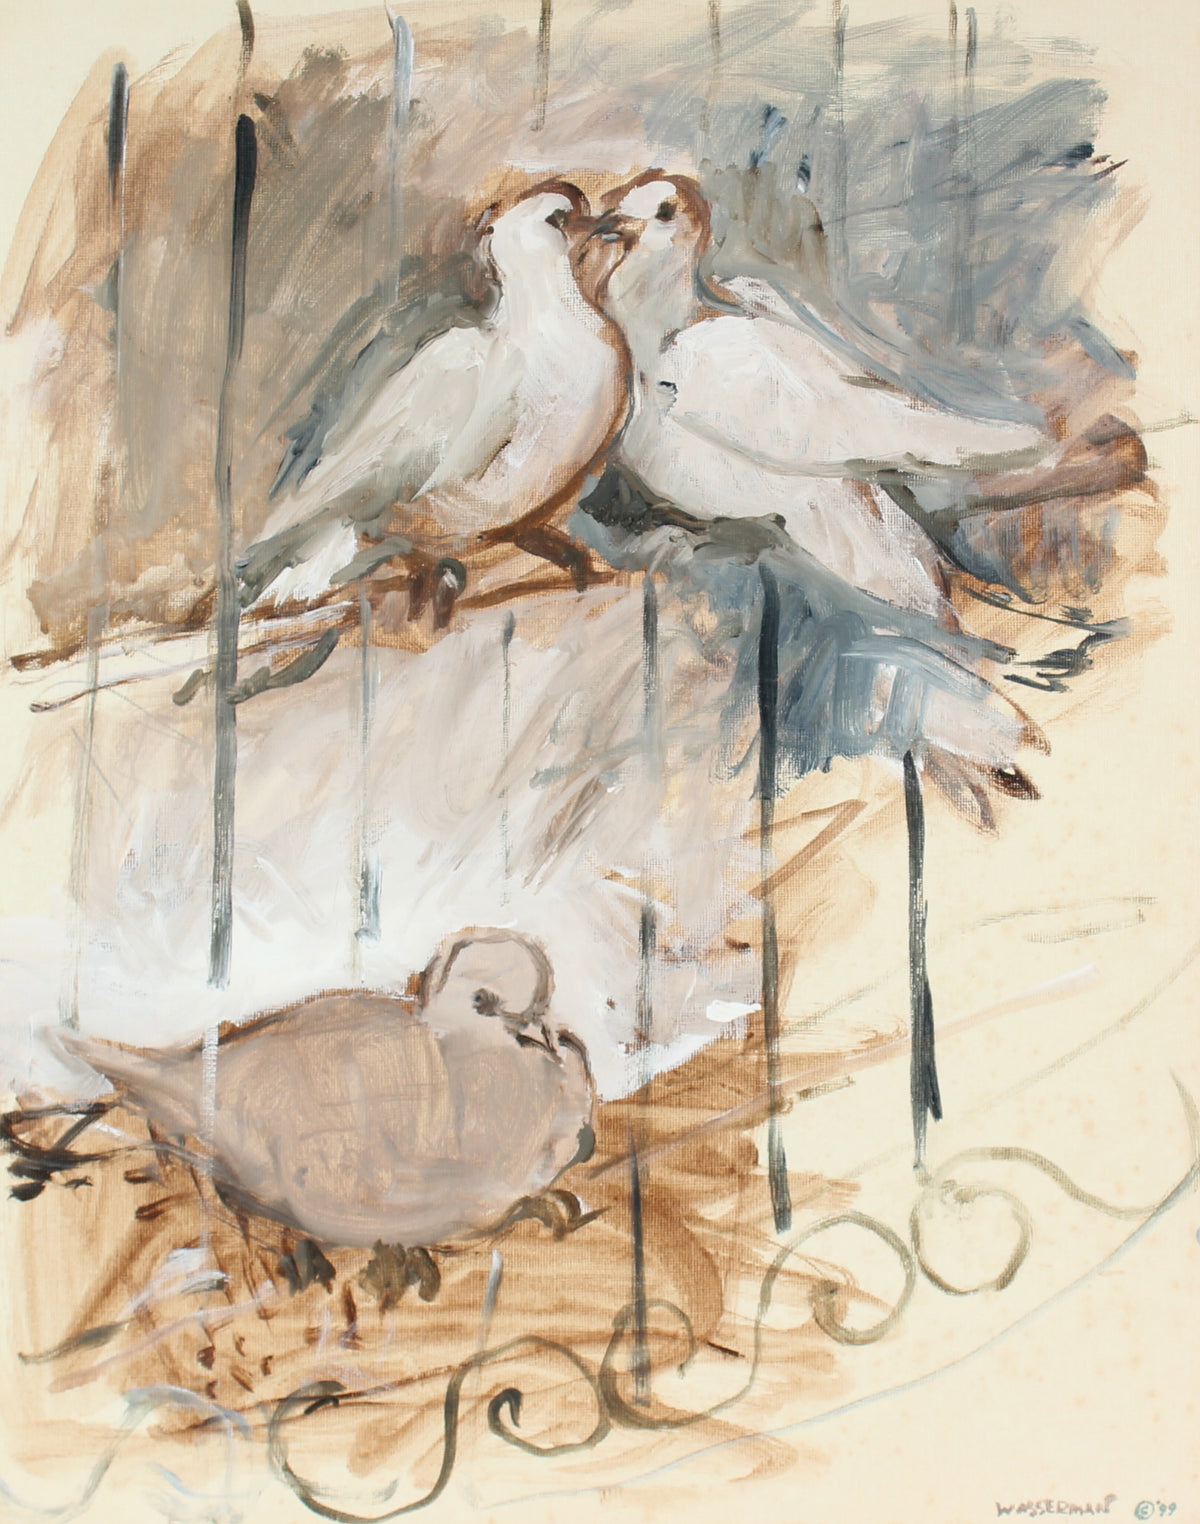 Doves Kissing on Fence &lt;br&gt;1999 Oil Painting &lt;br&gt;&lt;br&gt;#86580